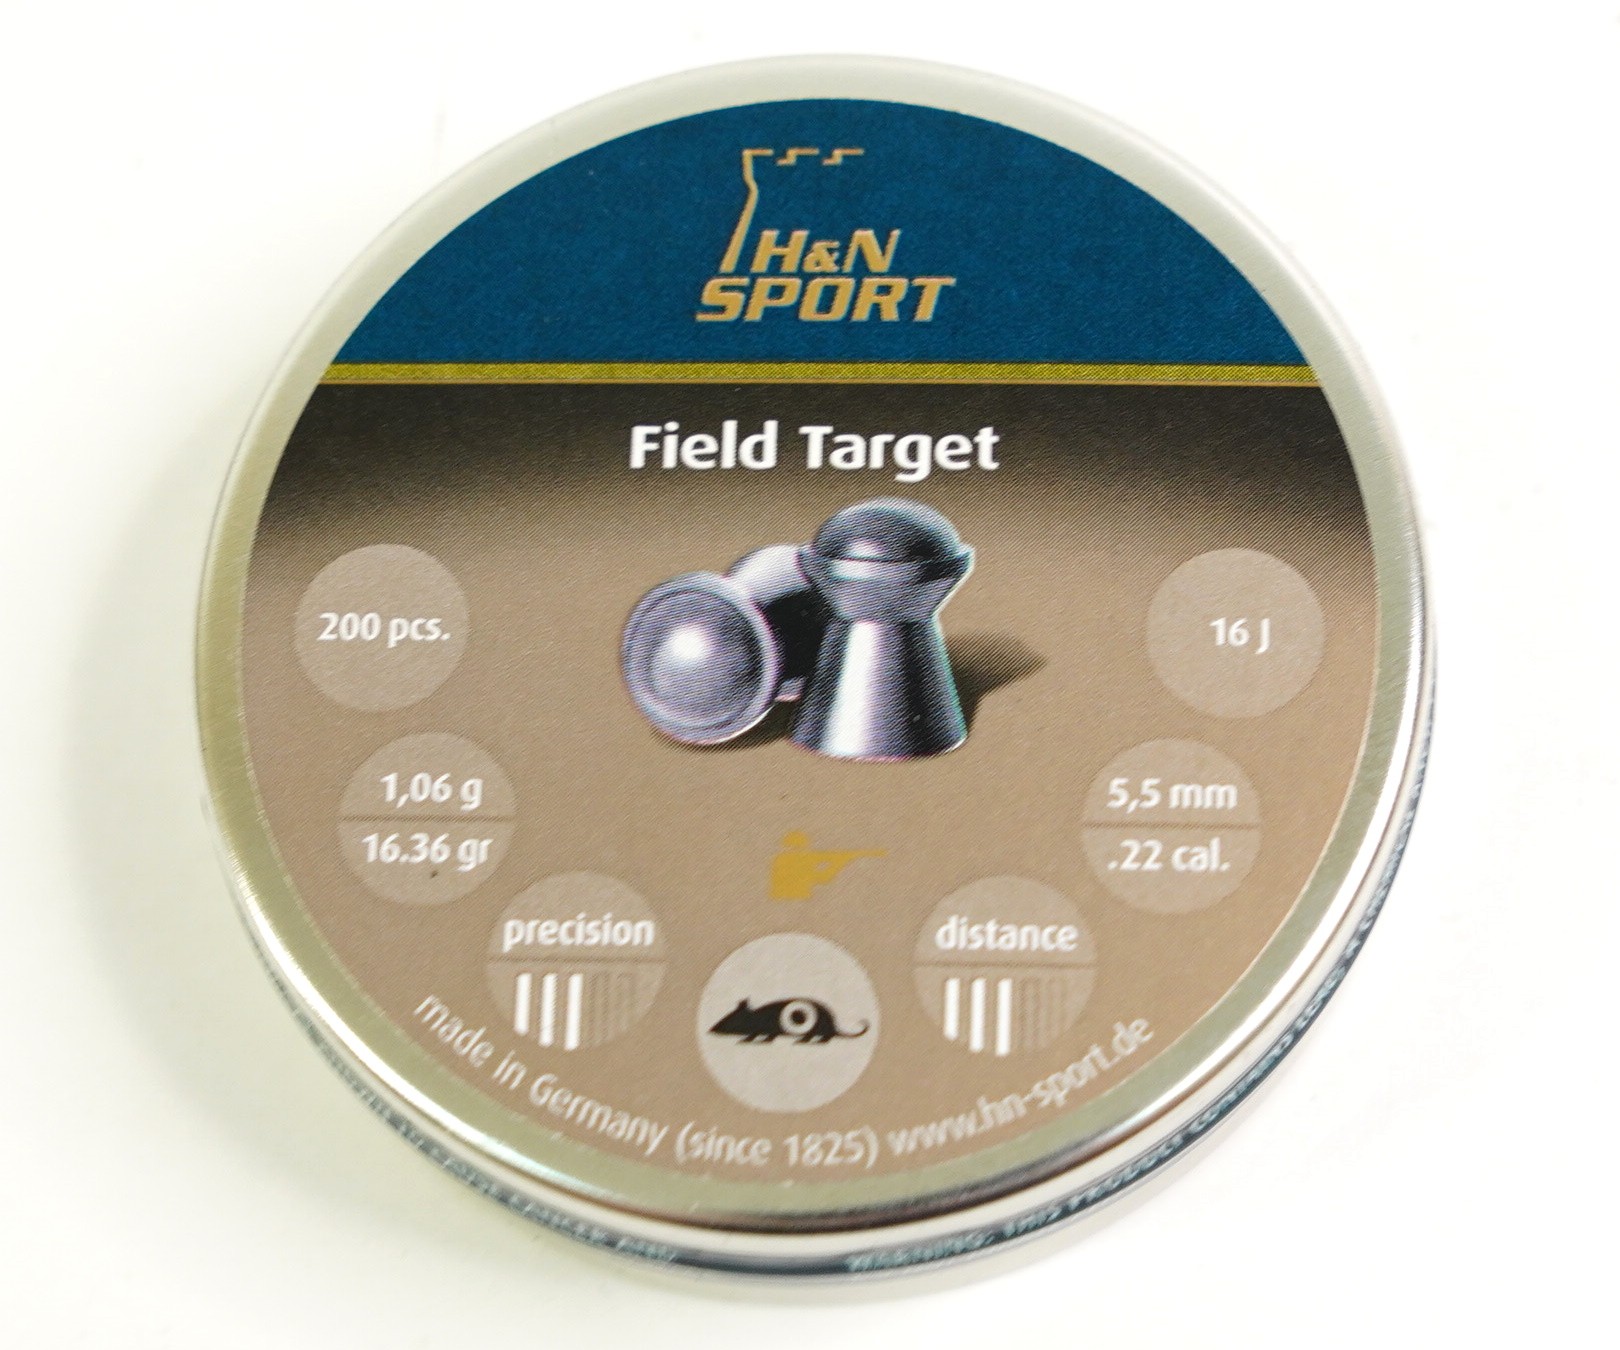 Пули H&N Field Target 5,5 мм, 1,06 грамм, 200 штук